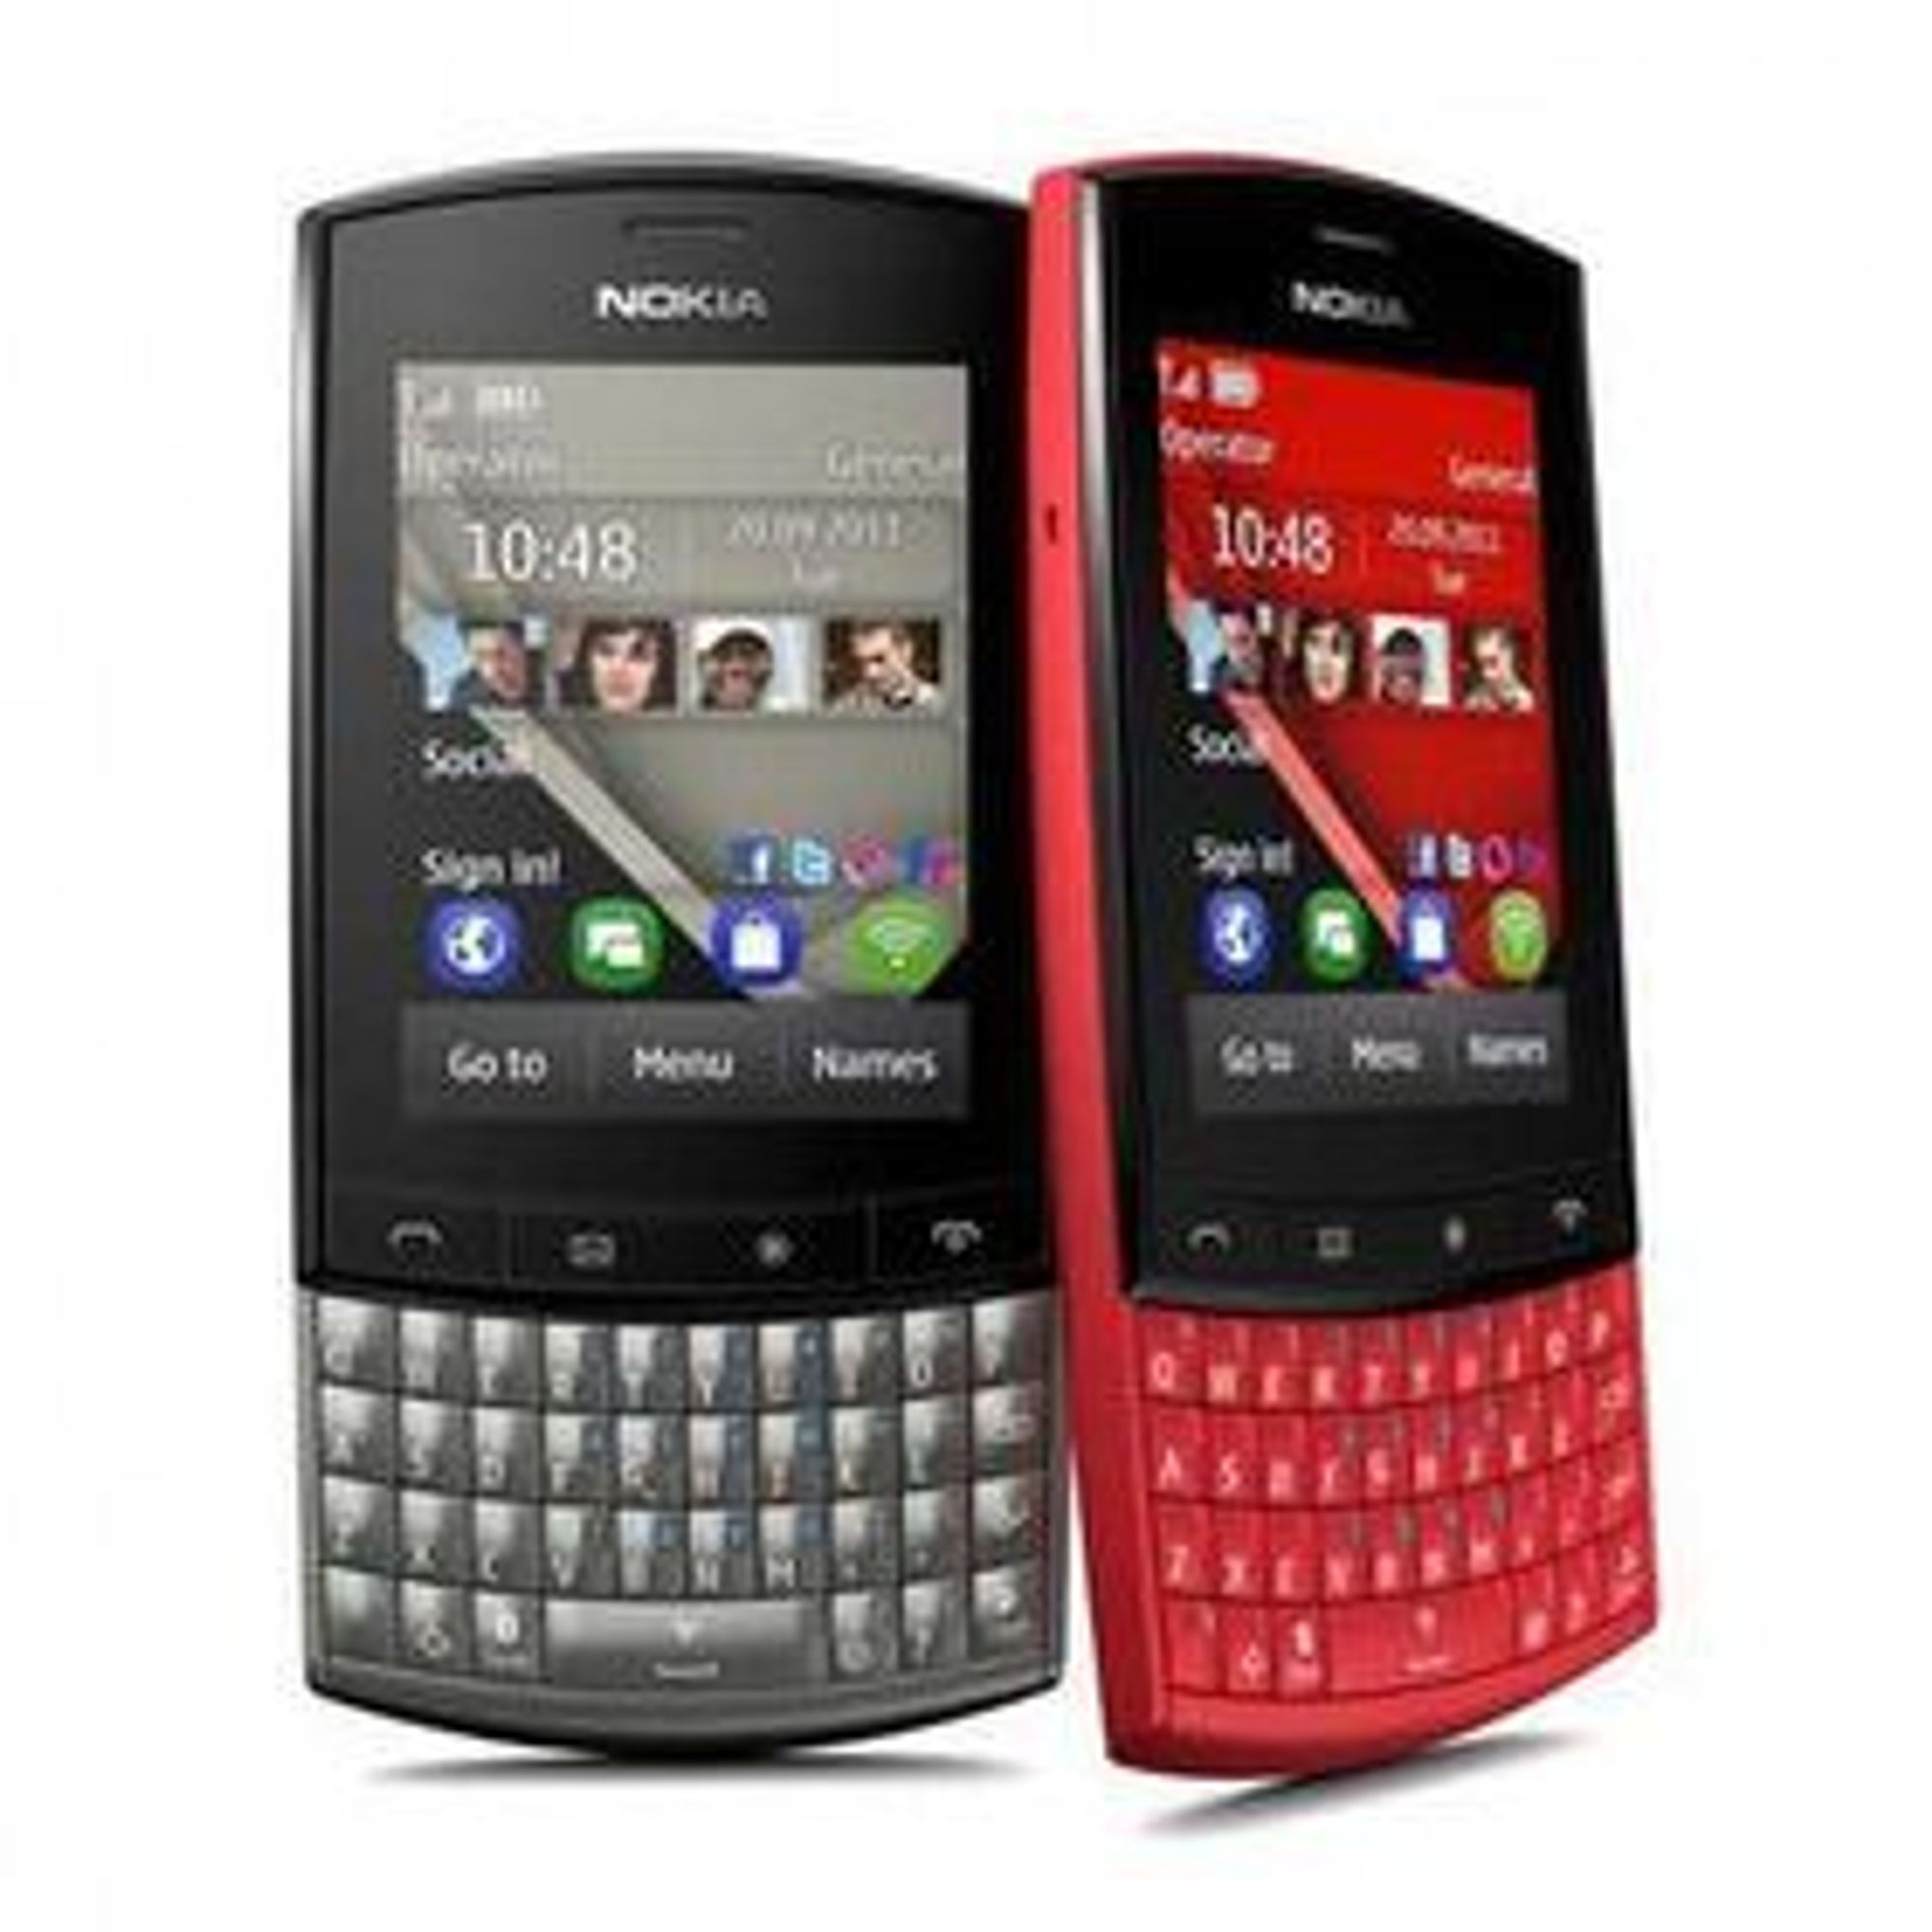 Nokias "enkle" mobiltelefon Asha 303 vil være den viktigste bidragsyteren til Nokias resultater i inneværende kvartal, tror Pareto.